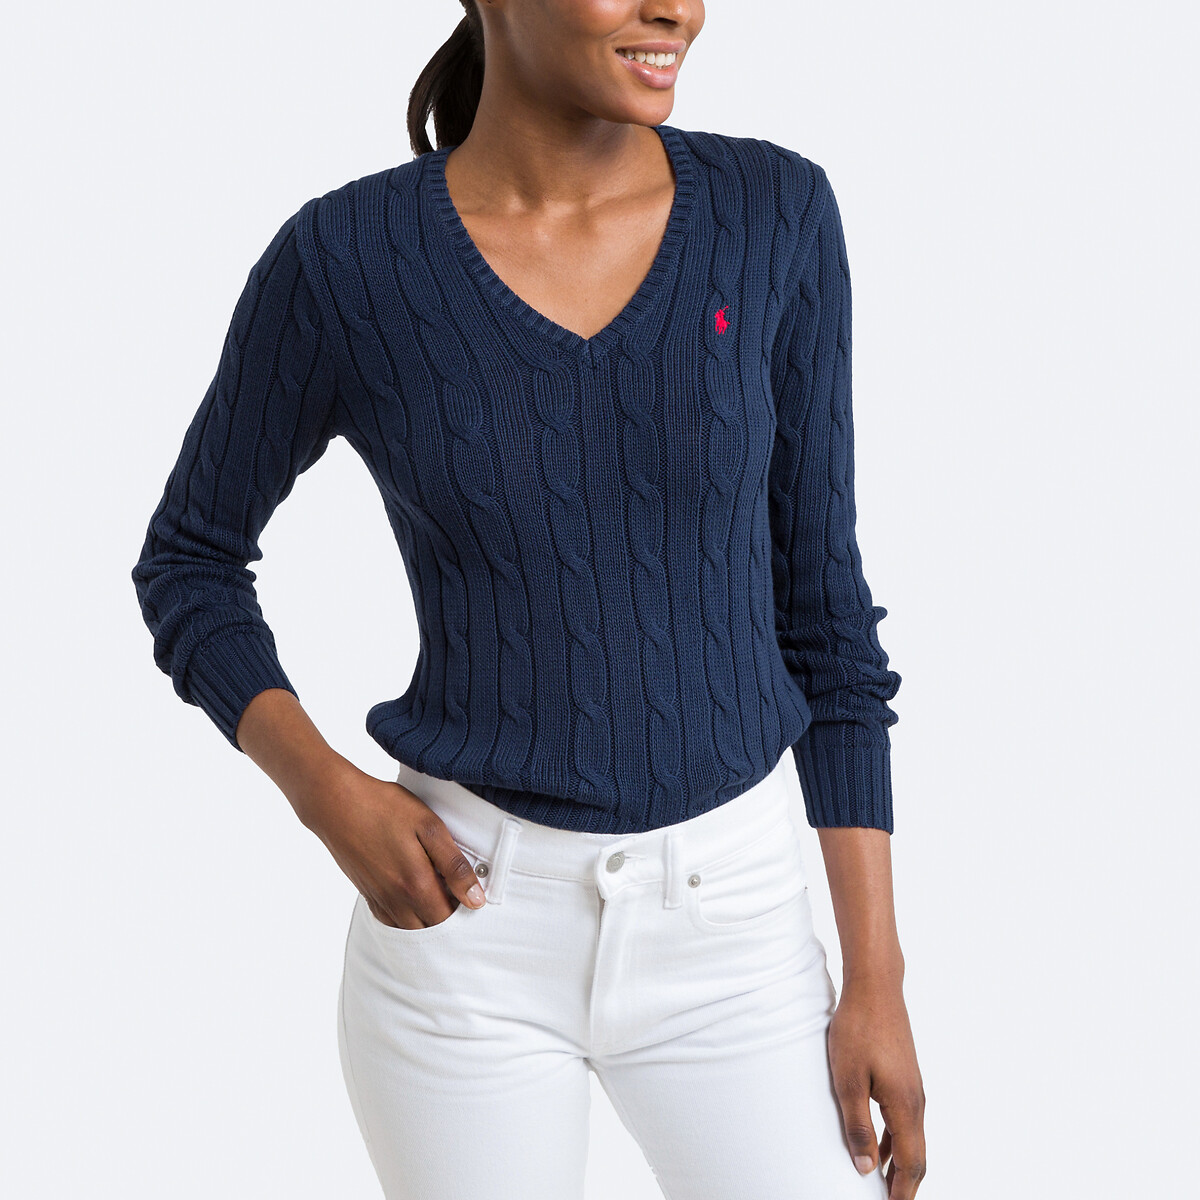 Пуловер с V-образным вырезом и витым узором XL синий пуловер с витым узором m синий